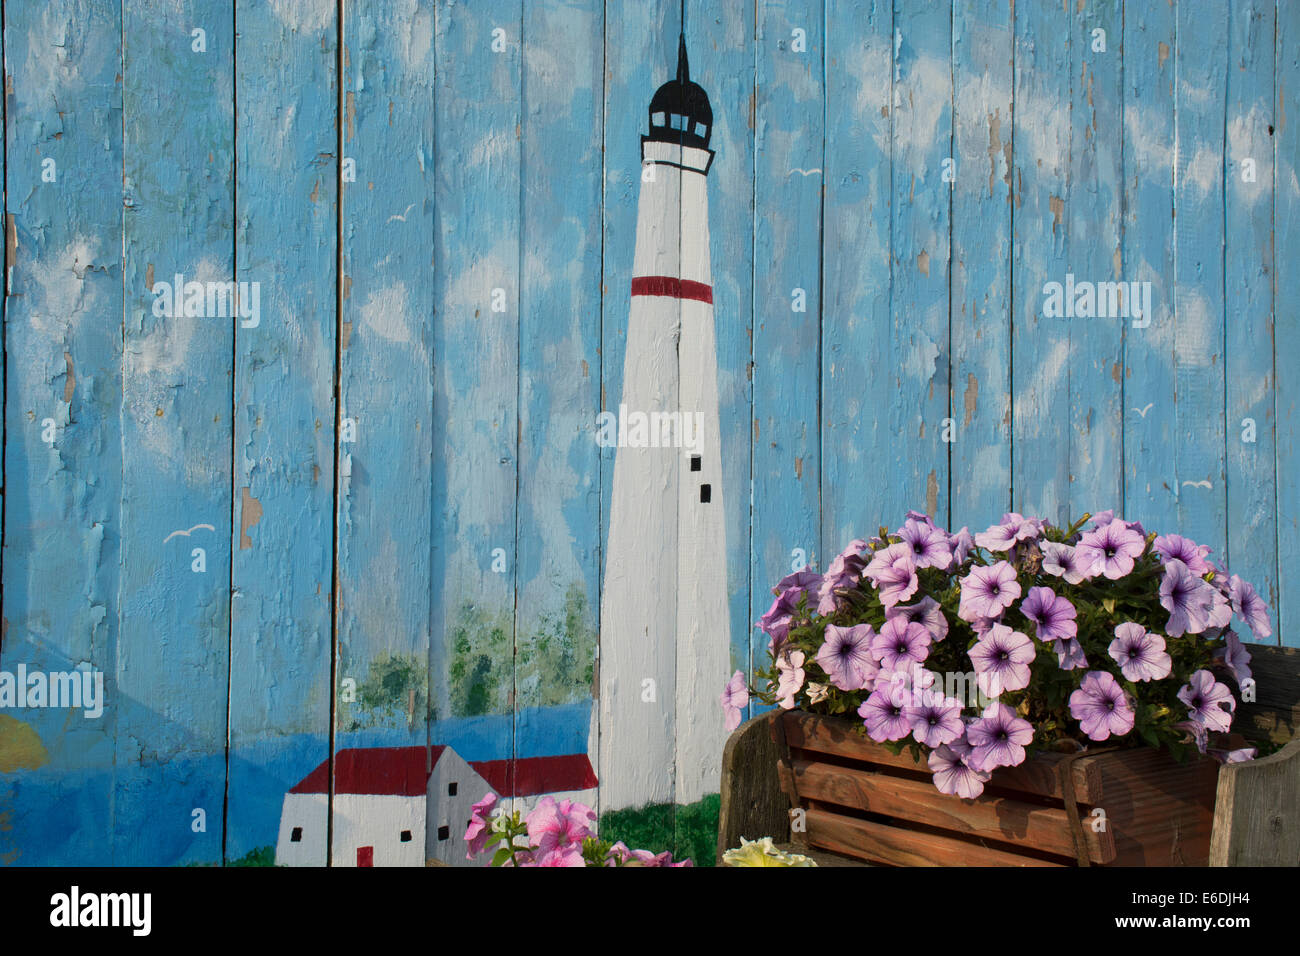 Michigan, San Ignace. Carro antico riempito di fiori nella parte anteriore di un dipinto di parete in legno con il faro. Foto Stock